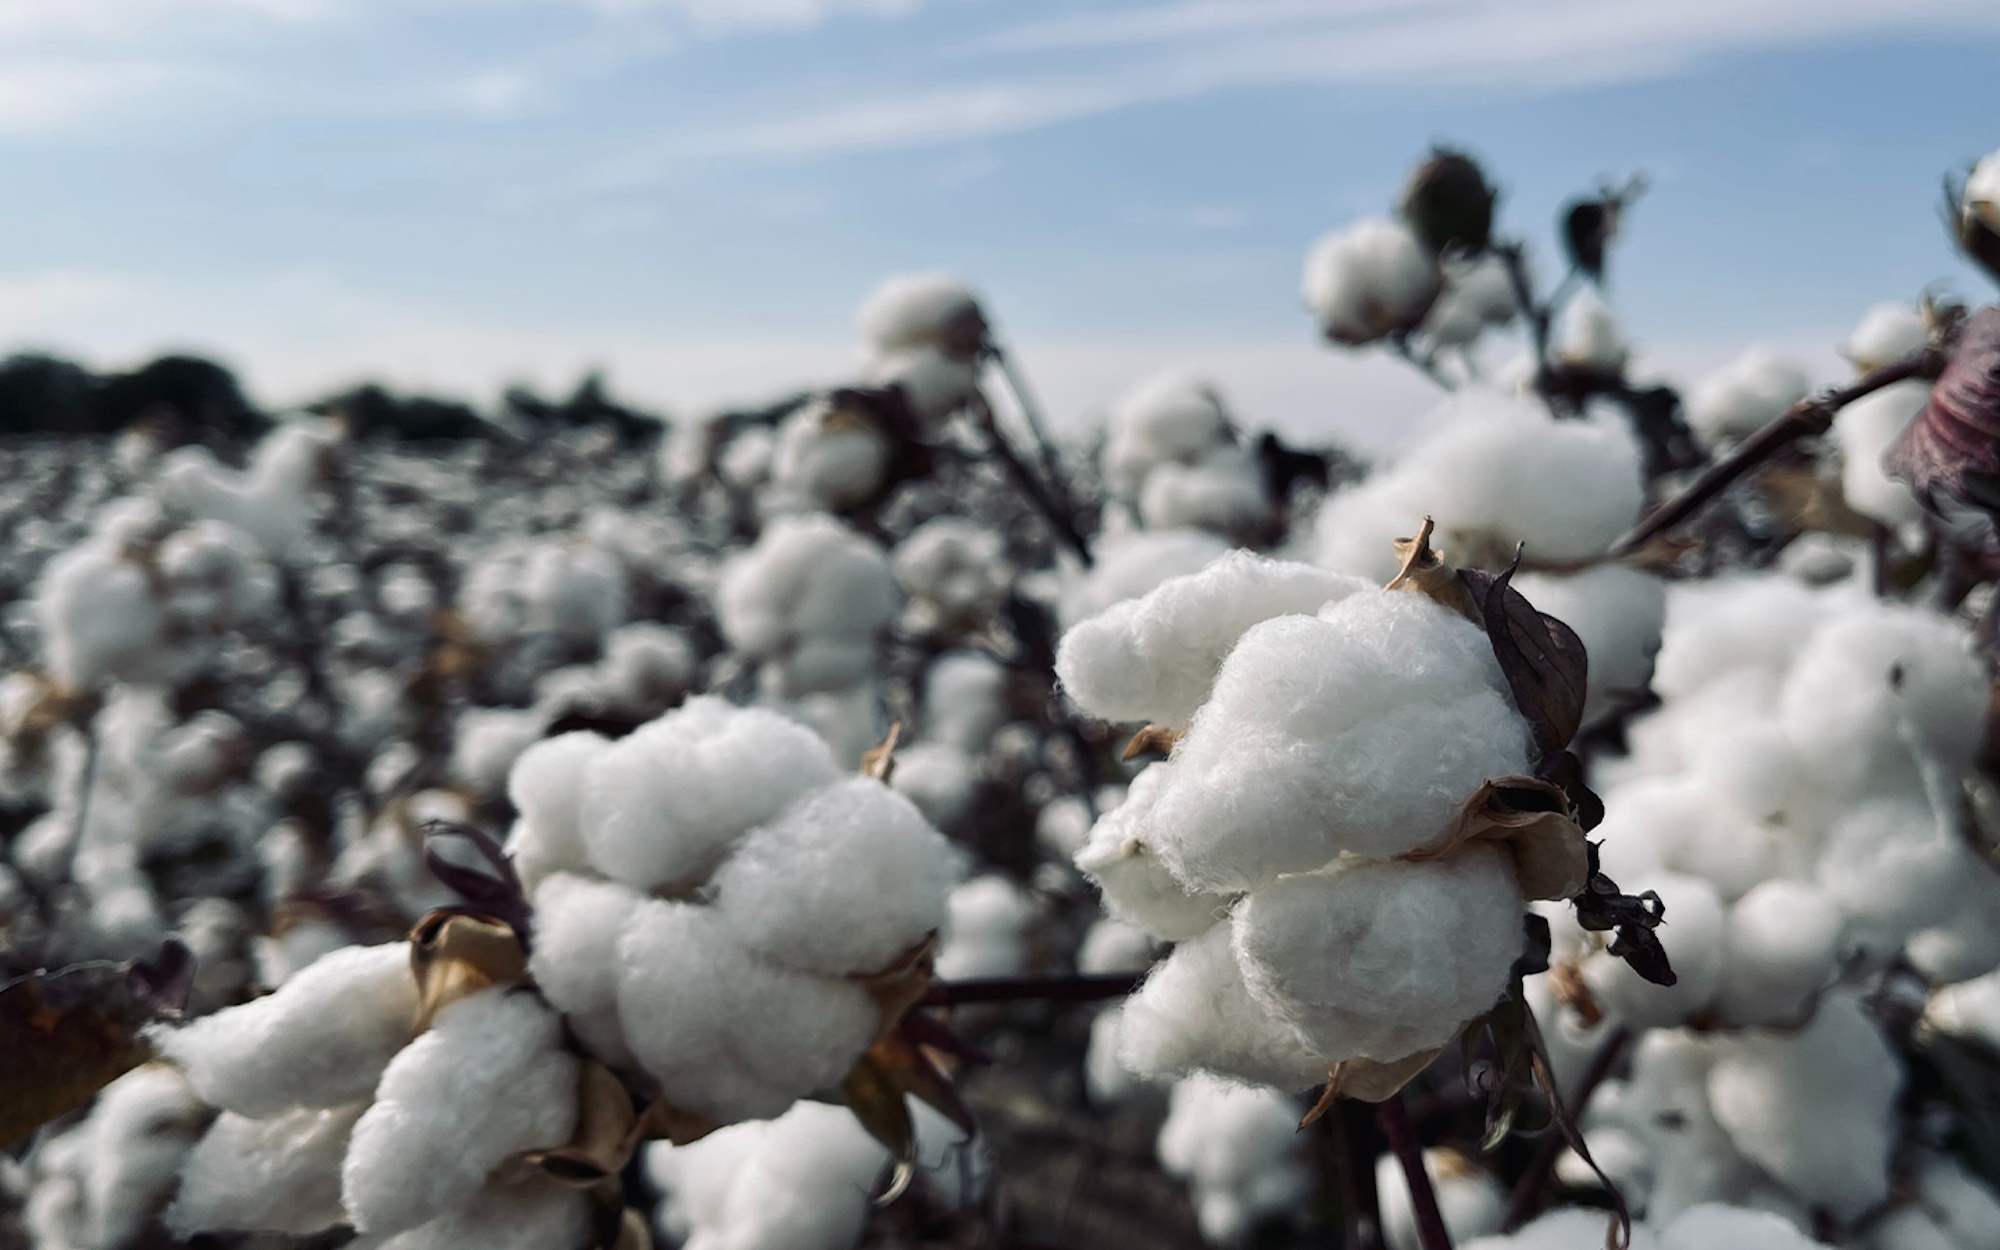 Brazil cotton